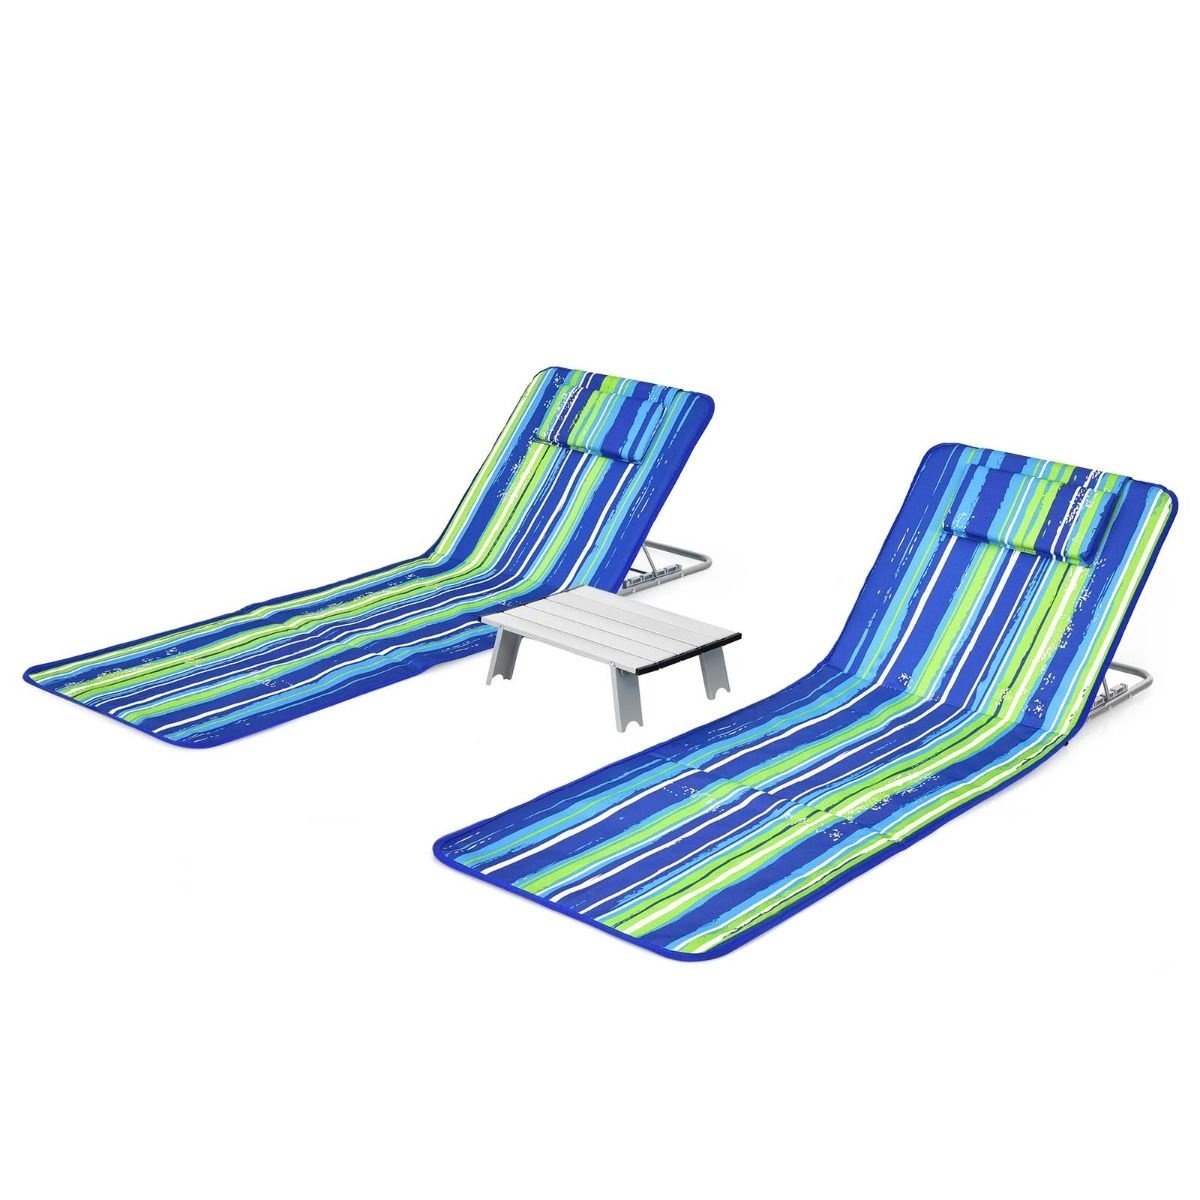 Strandmatten Coast (2 Stück) mit Beistelltisch - 151 x 56 x 27 cm - Grün / Blau